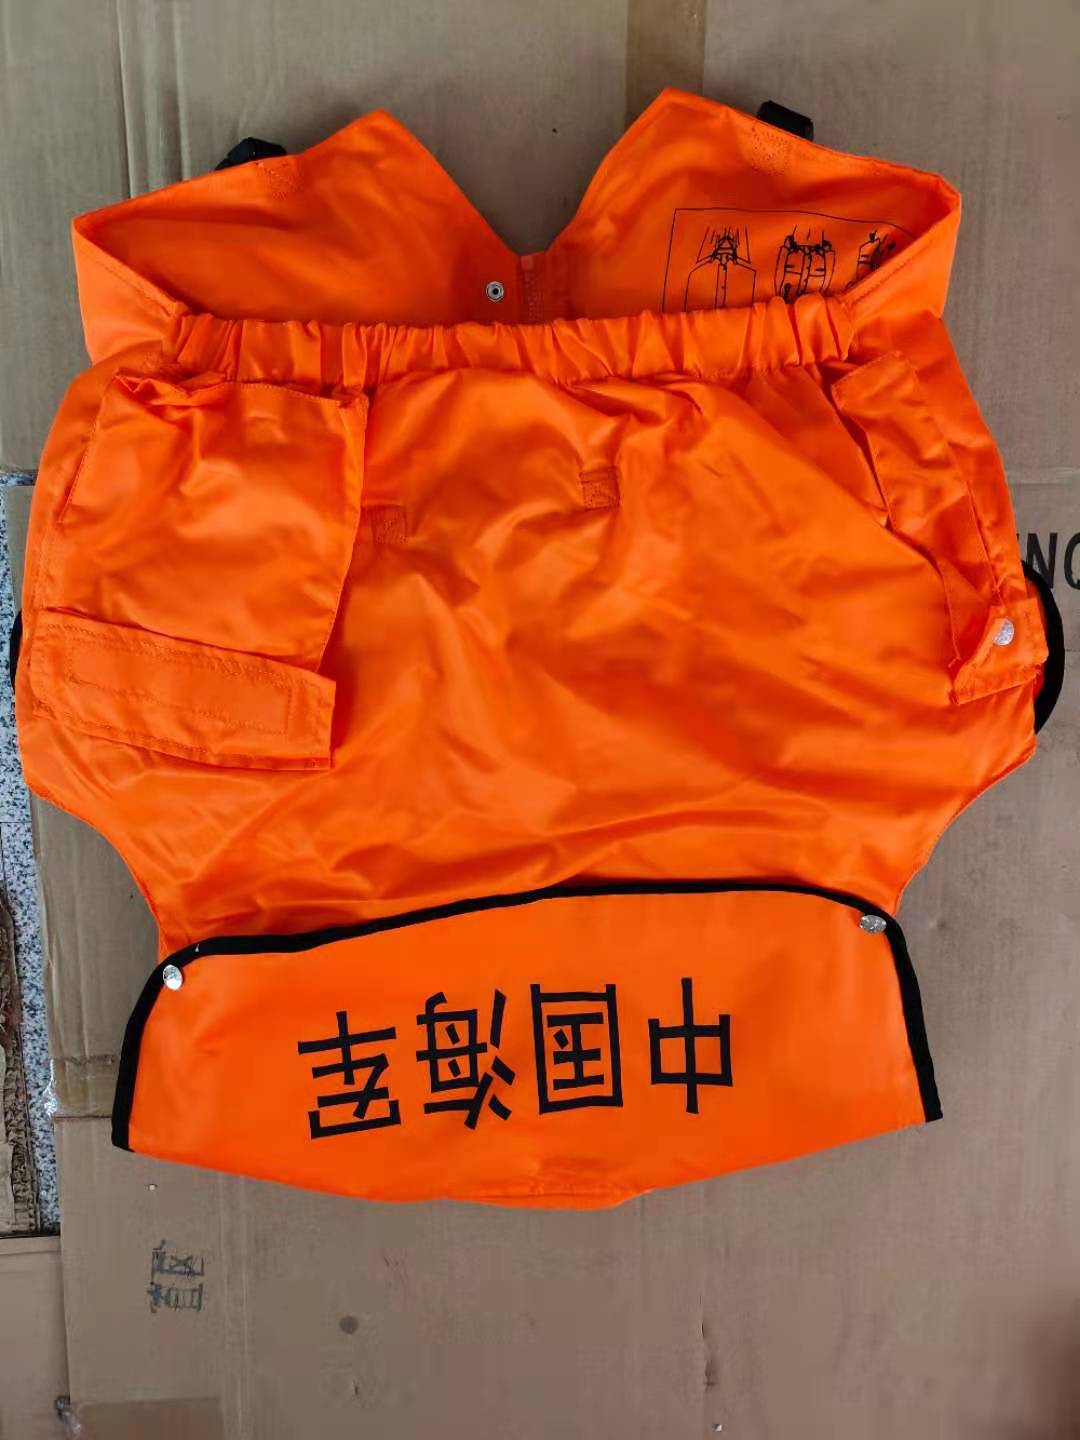 徐州市海警充气式救生衣厂家江苏救生衣厂家 海警充气式救生衣批发